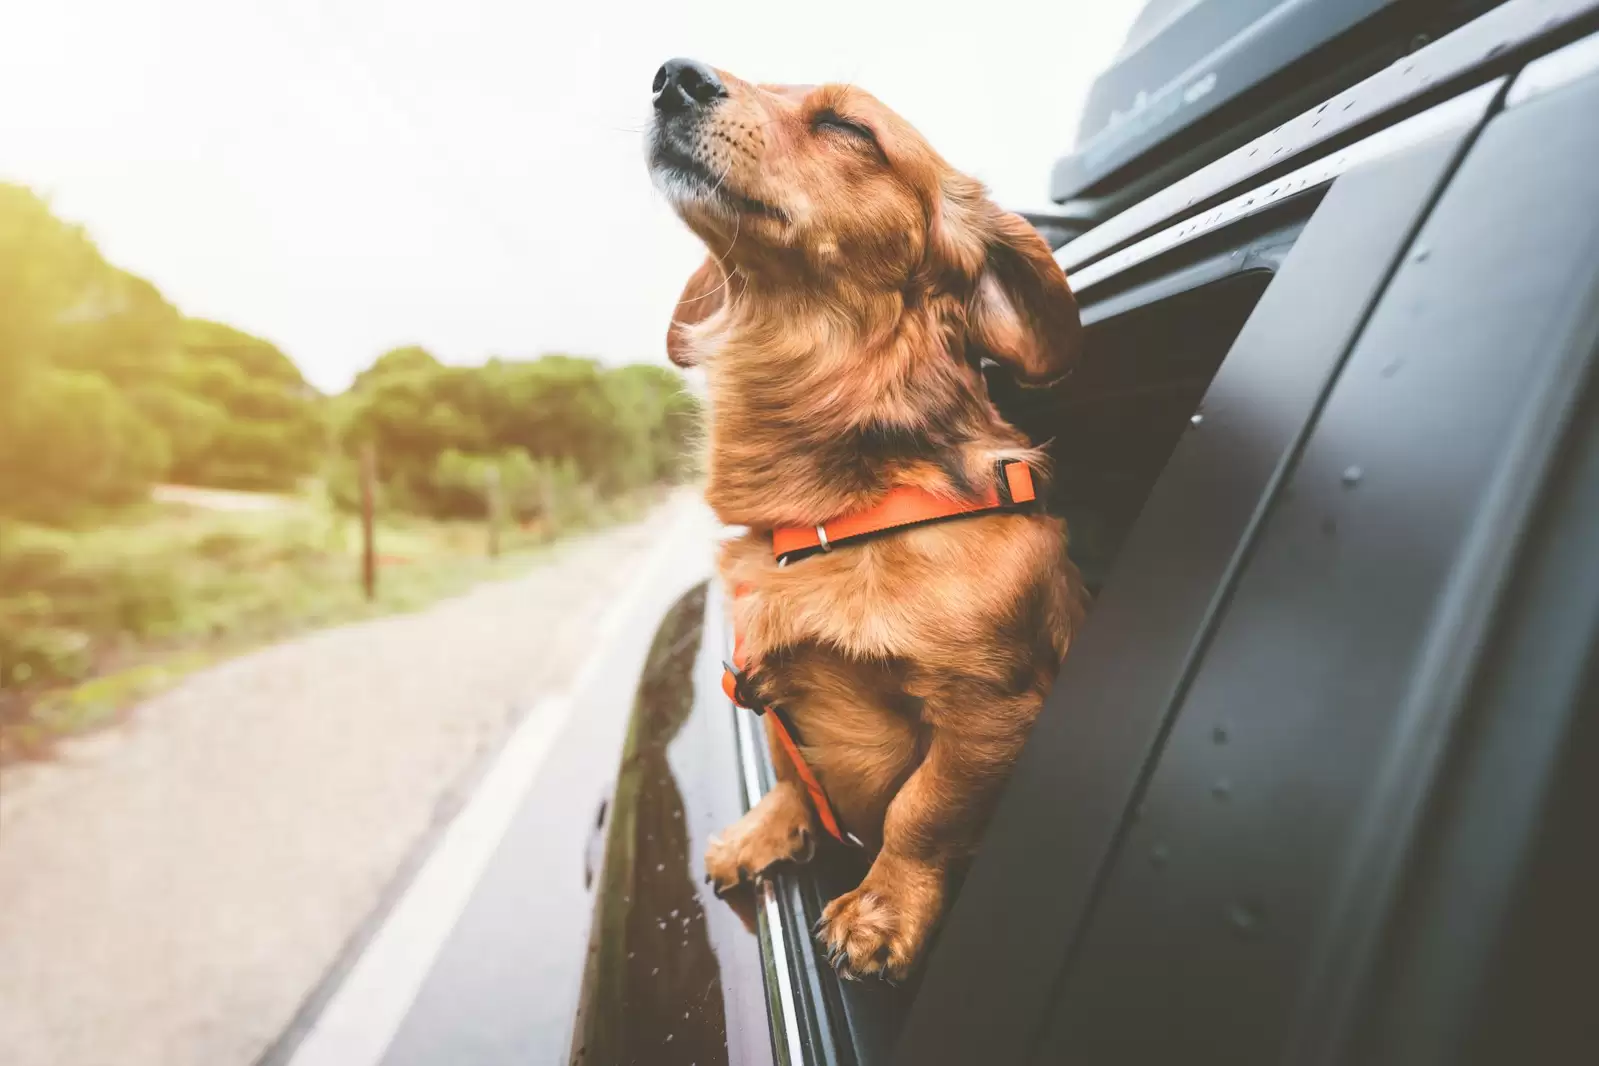 dog in car window